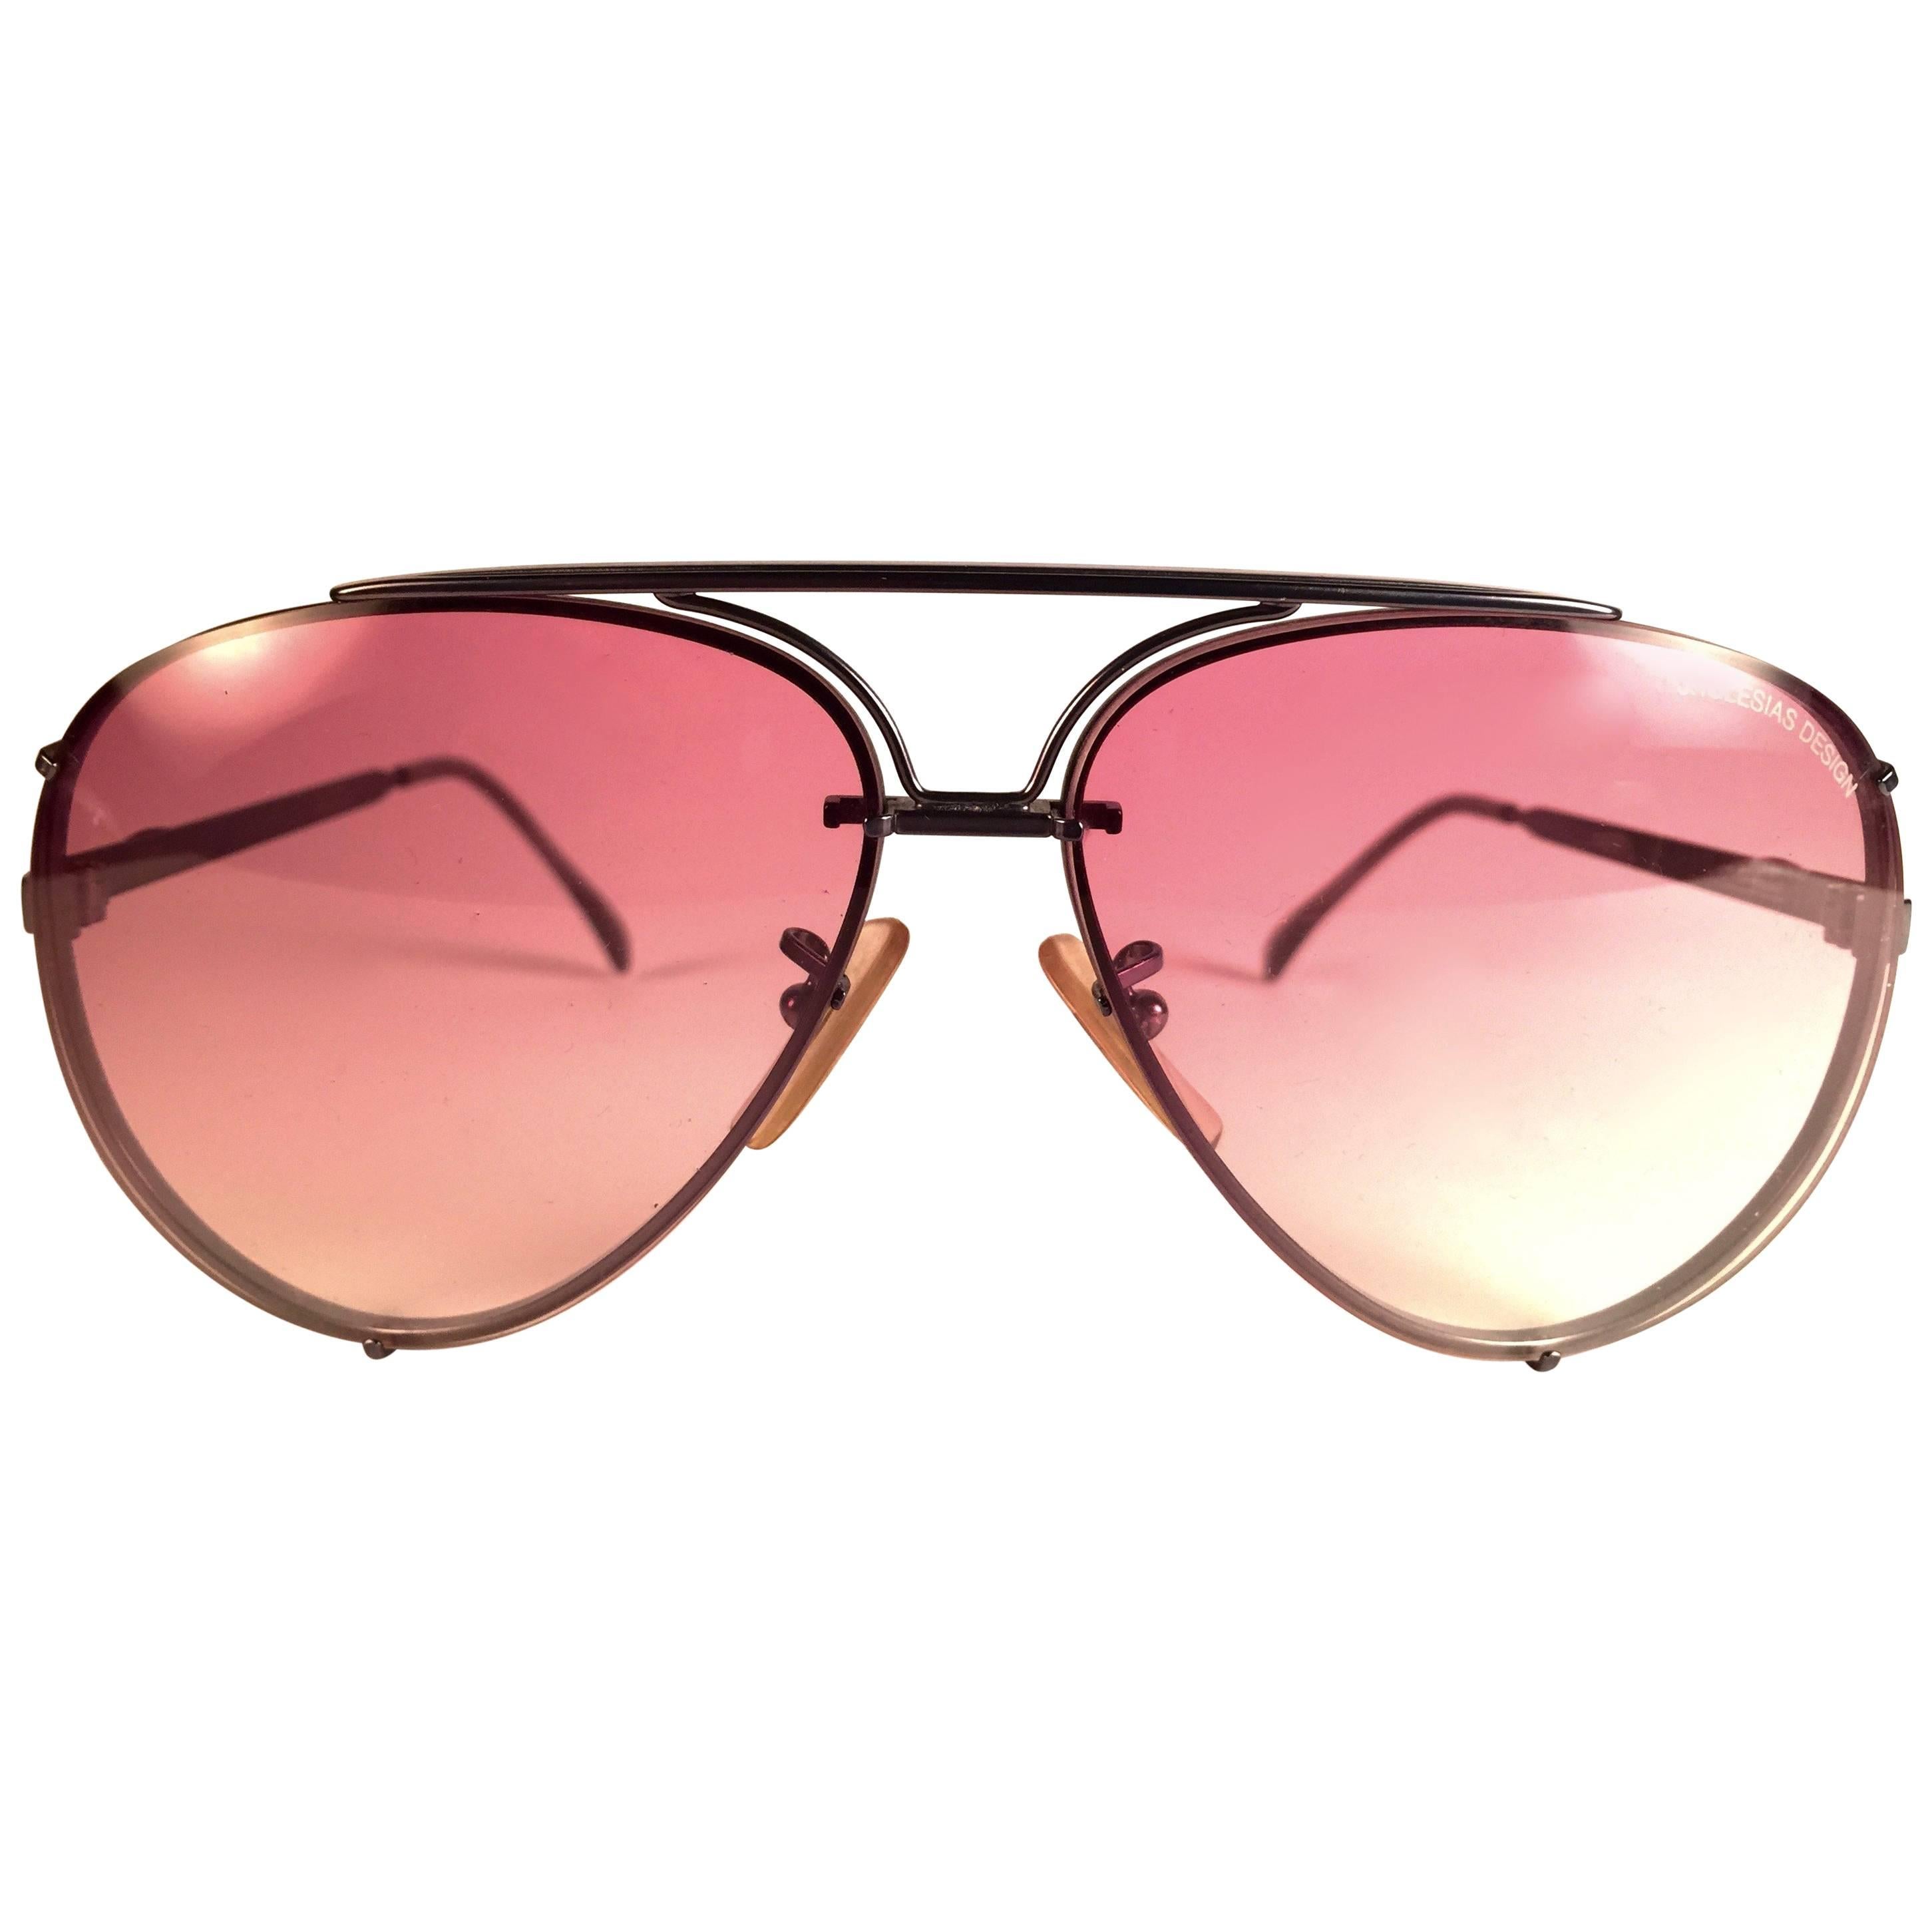 New Vintage Julio Iglesias Design Sunglasses Rose Gradient Lens 1980 Sunglasses